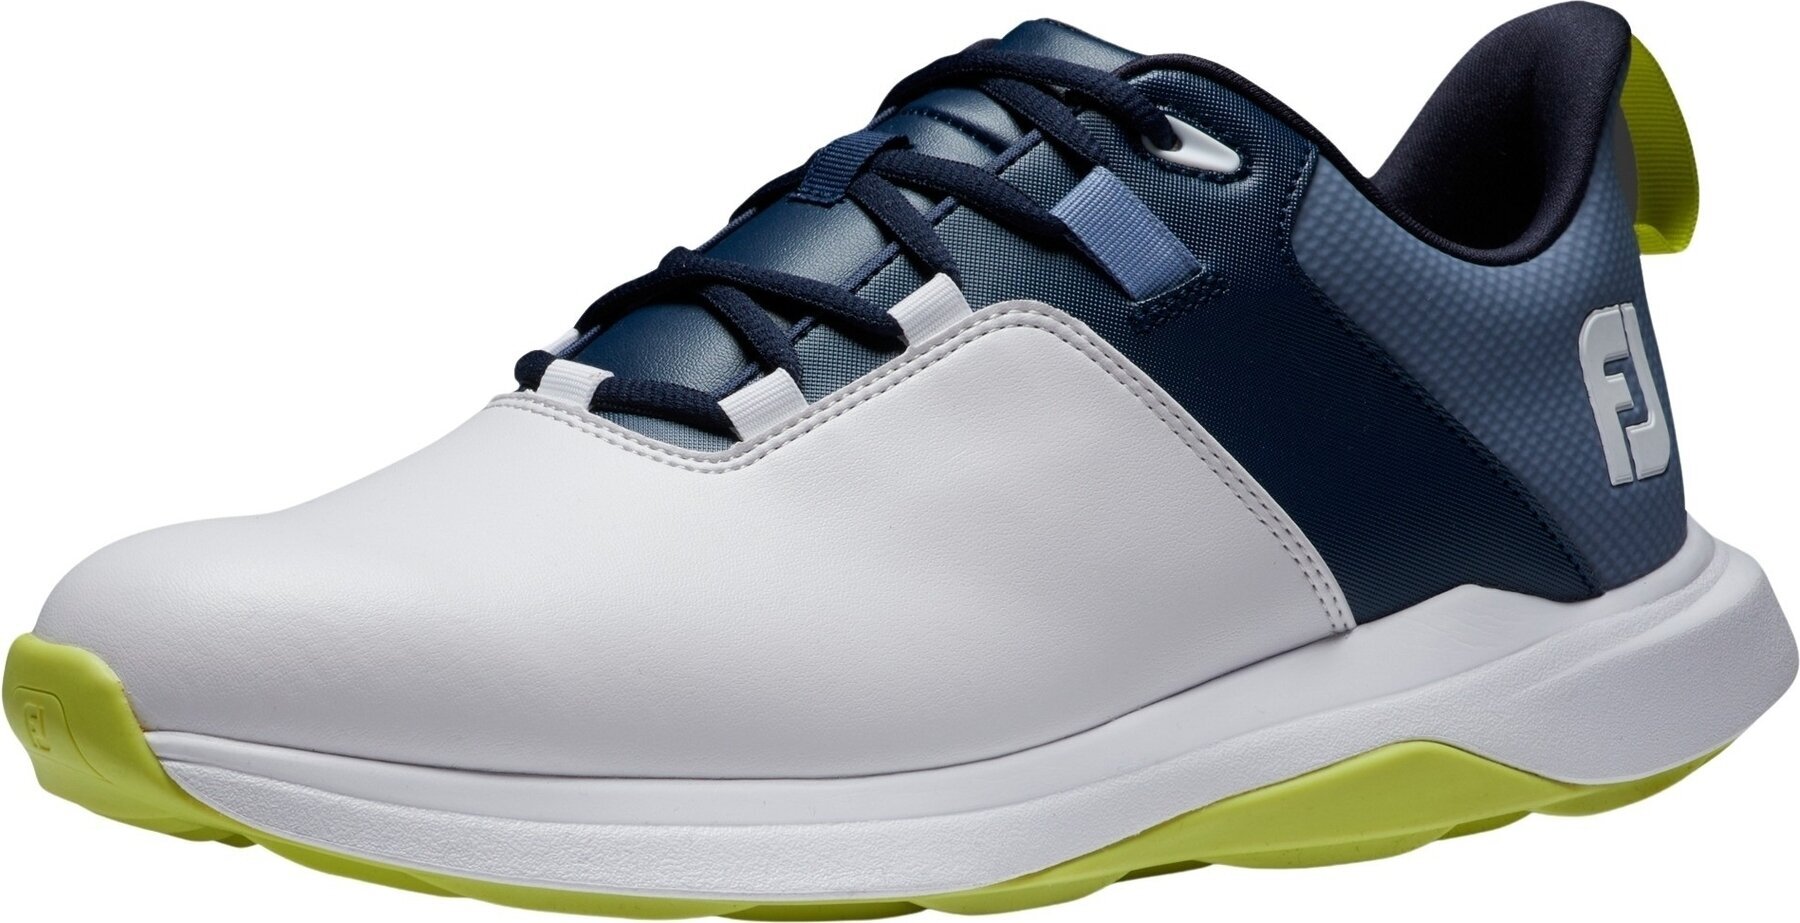 Chaussures de golf pour hommes Footjoy ProLite Mens Golf Shoes White/Navy/Lime 44,5